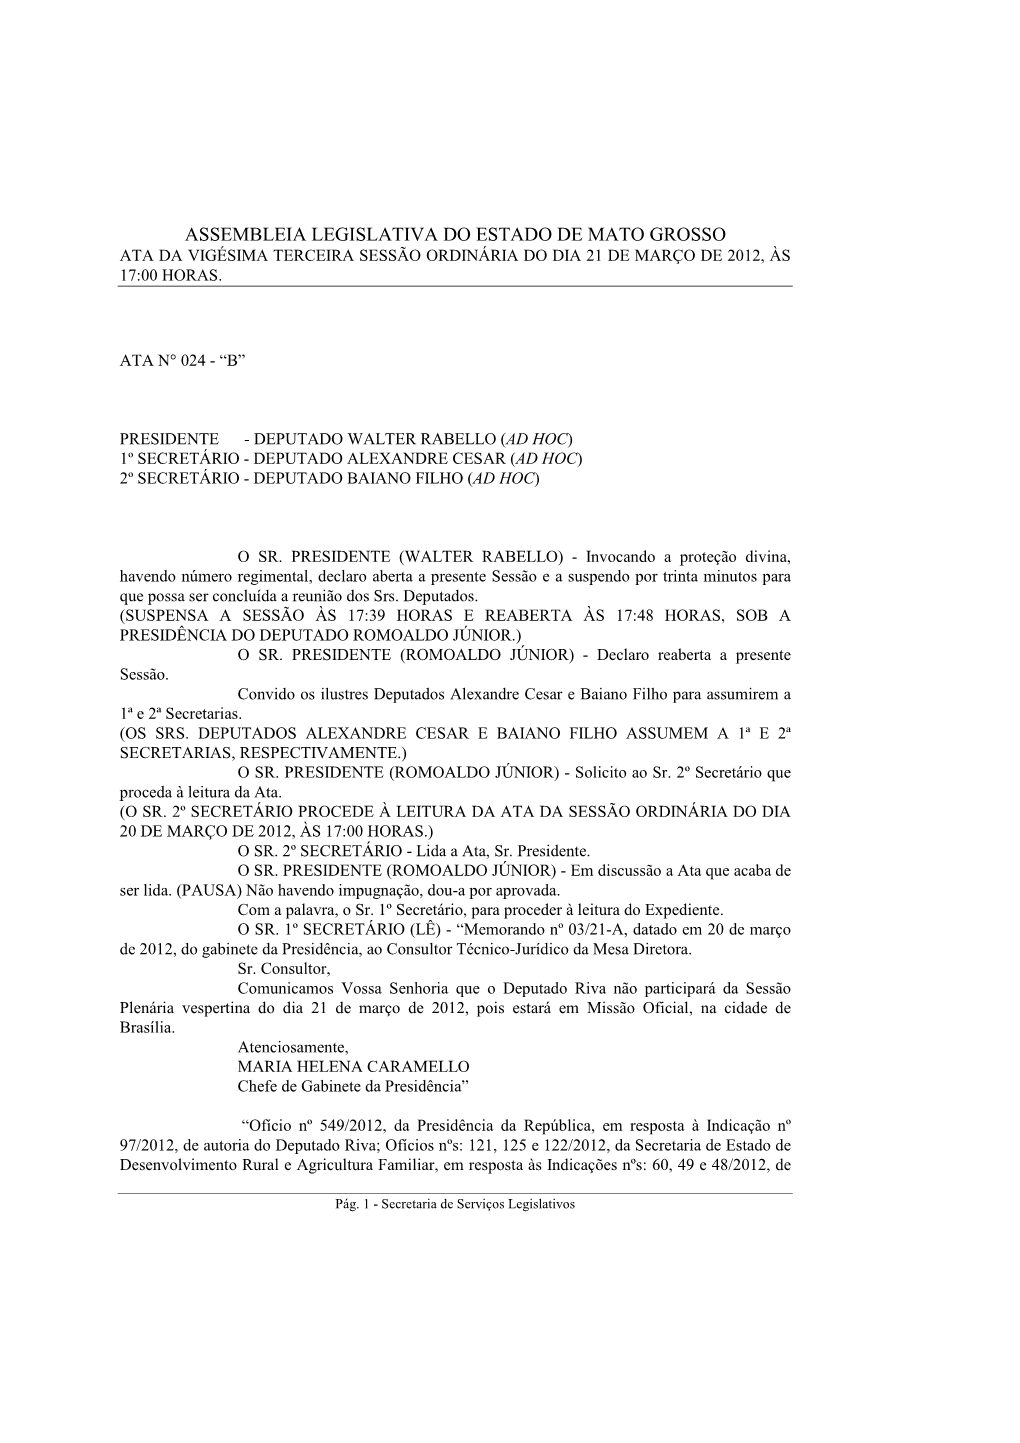 Assembleia Legislativa Do Estado De Mato Grosso Ata Da Vigésima Terceira Sessão Ordinária Do Dia 21 De Março De 2012, Às 17:00 Horas